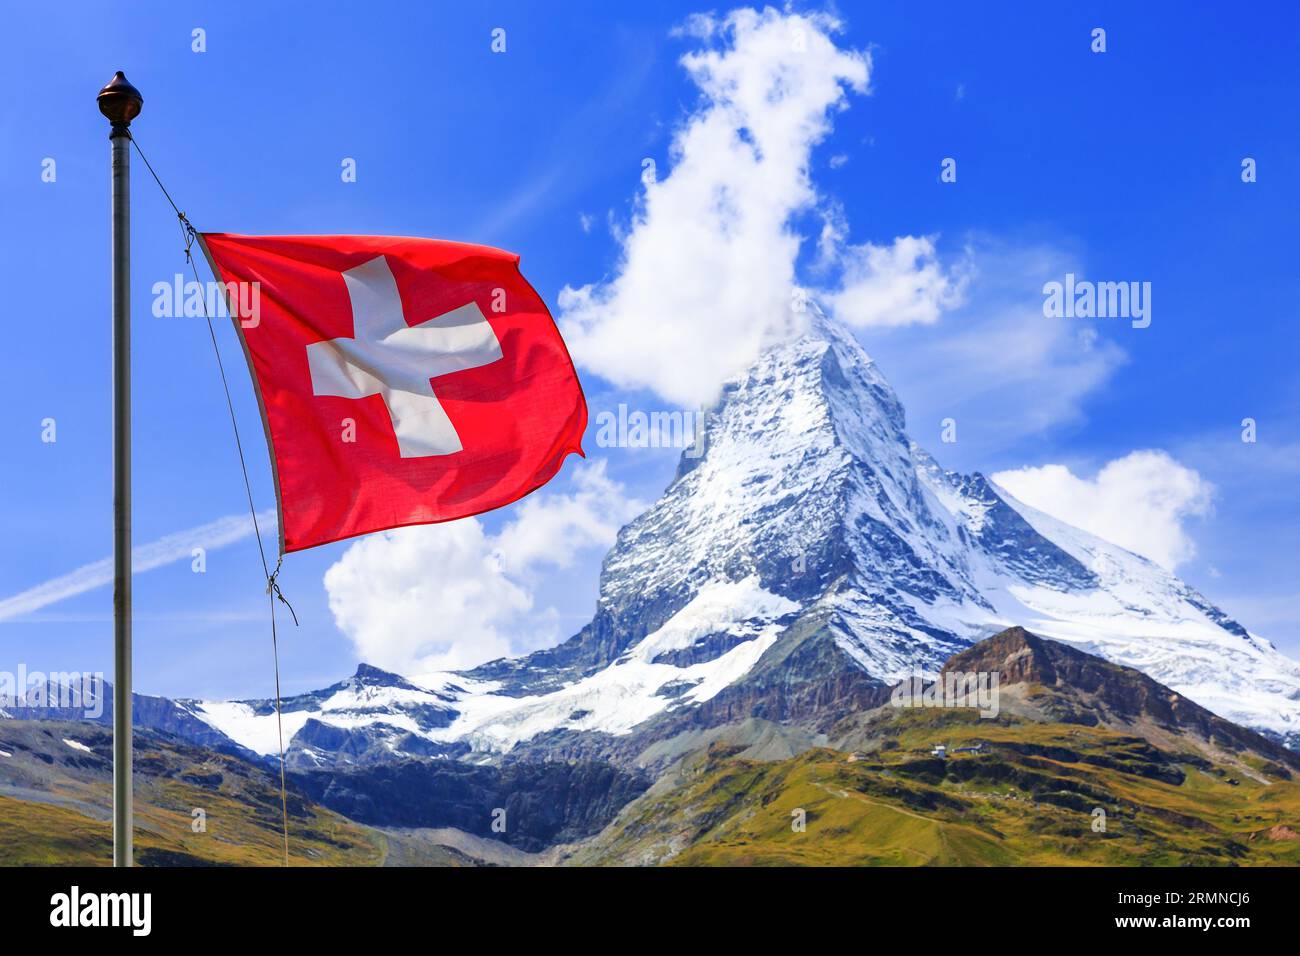 Zermatt, Suisse. Drapeau suisse avec la montagne Matterhorn en arrière-plan. Région Valais. Banque D'Images